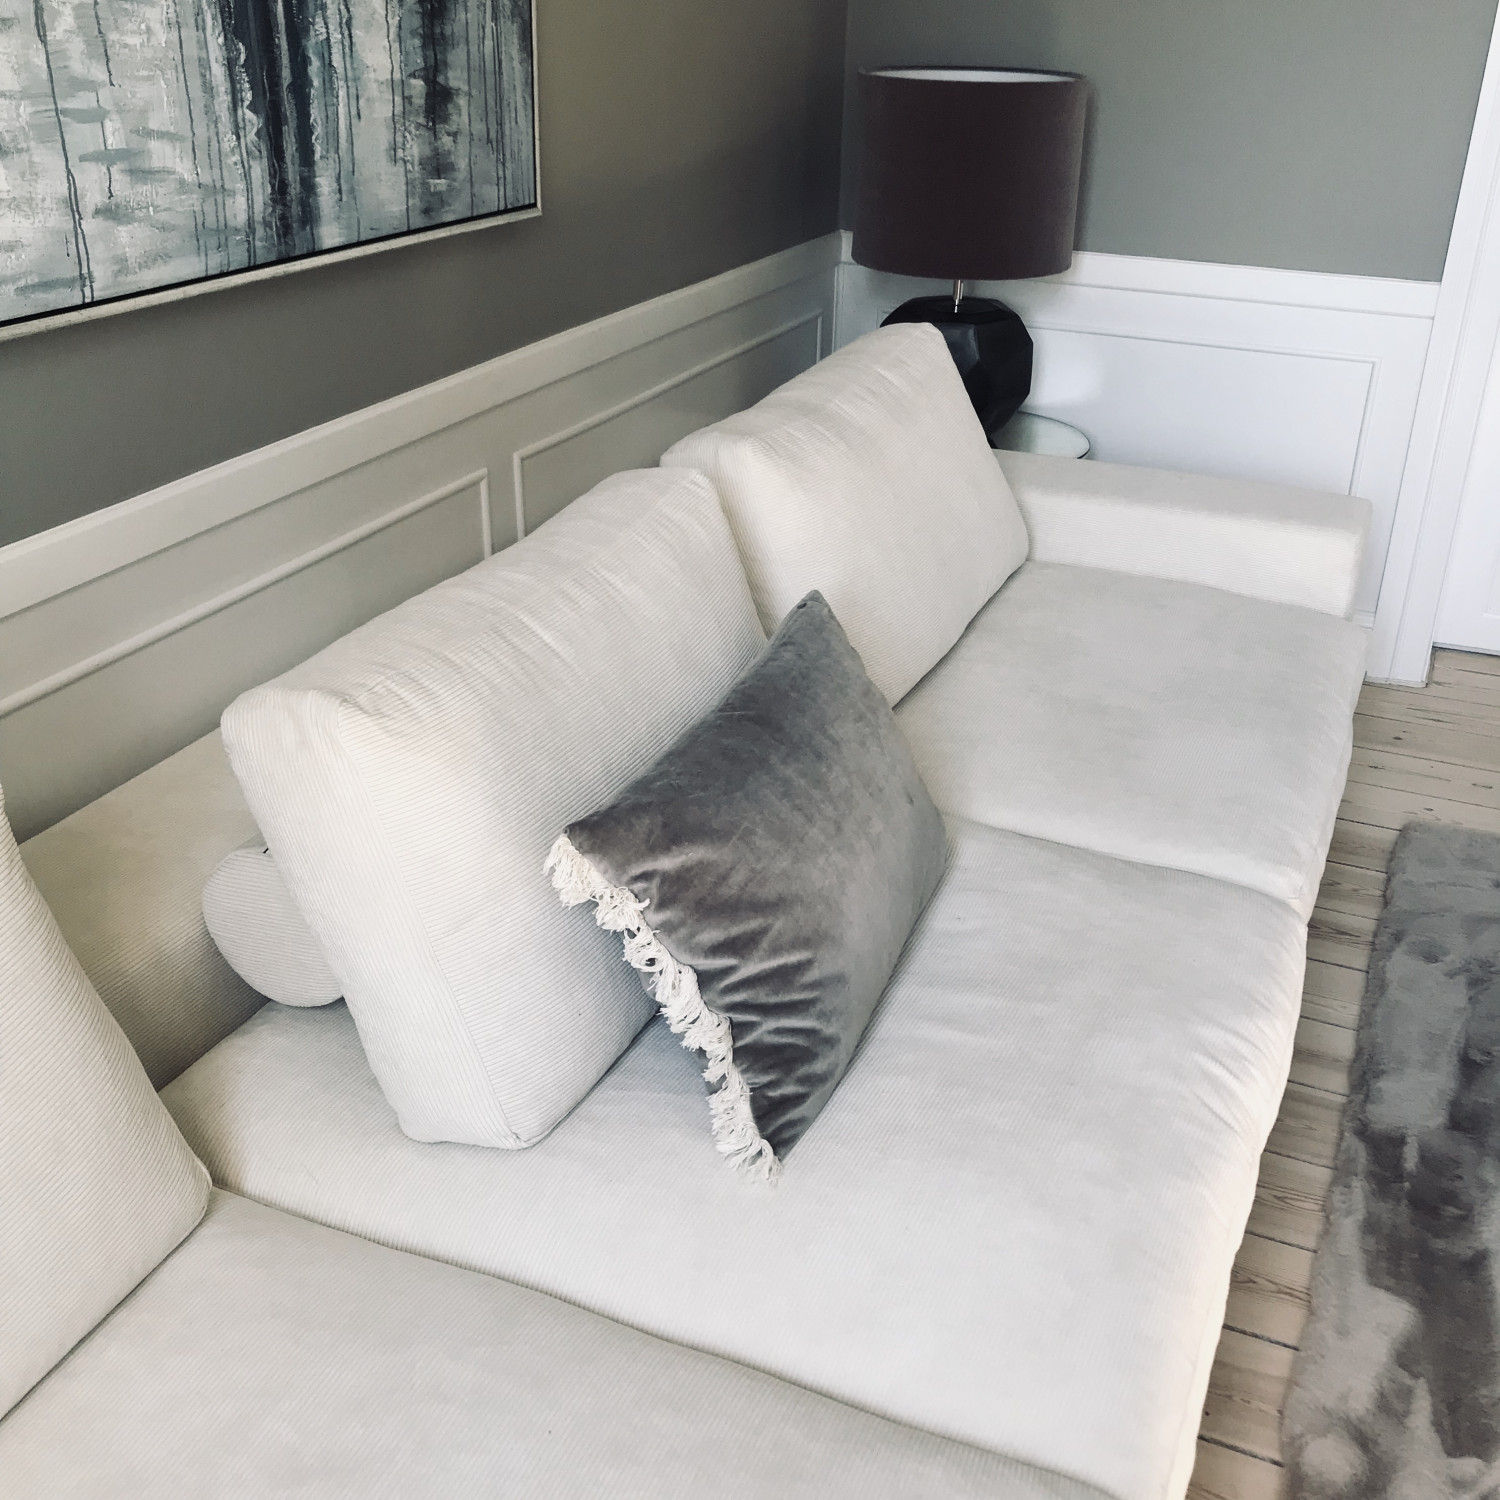 Endelig fandt vi den rigtige. Ny sofa! | Daglig Blog | Mascha Vang